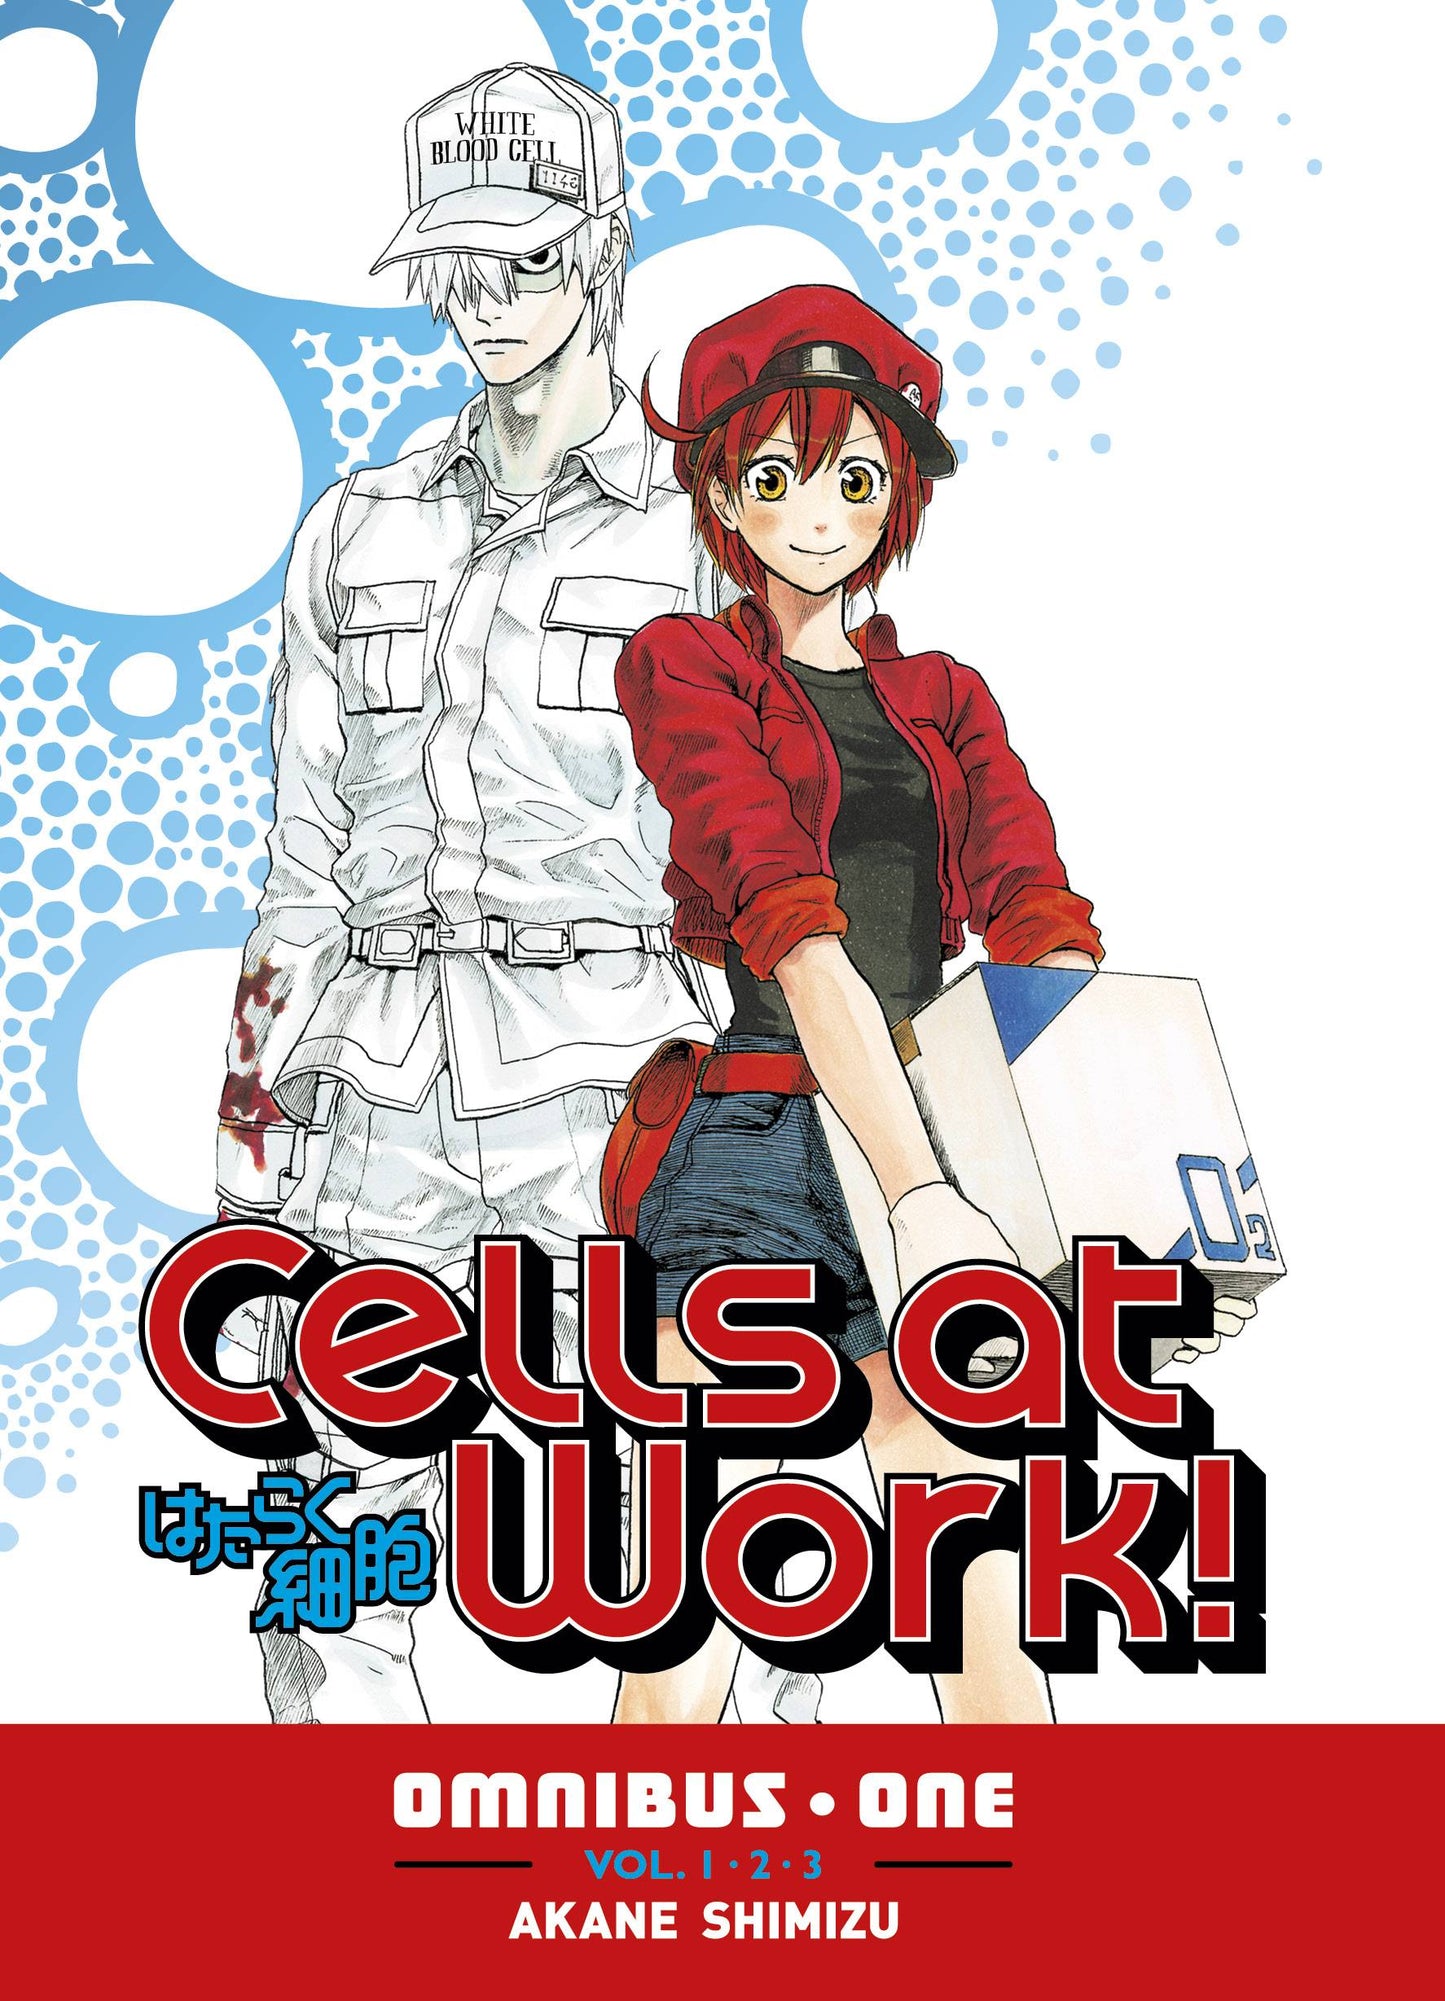 Manga - Cells at Work - Omnibus Volume 1